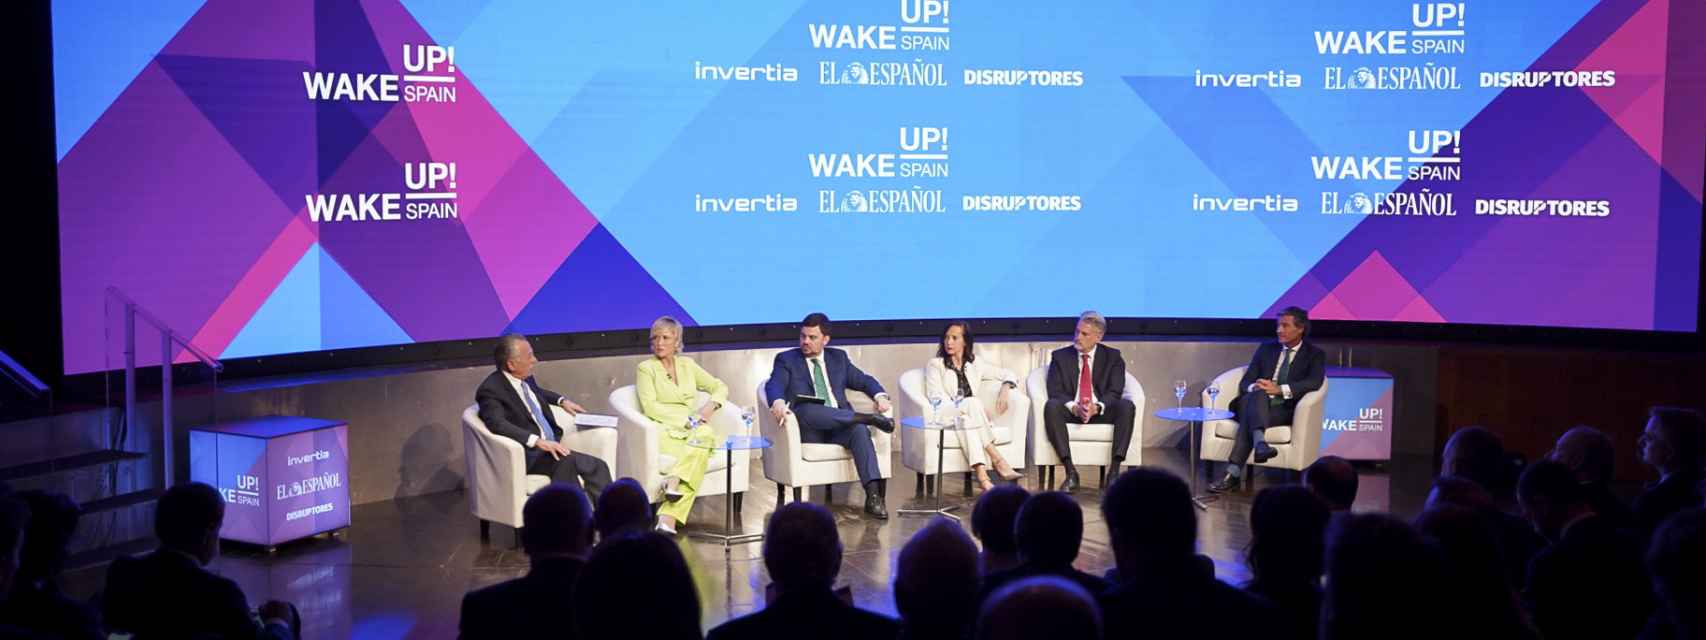 En el Wake Up, Spain! se juntaron 150 dirigentes y empresarios para hablar de sus planes futuros de sostenibilidad.